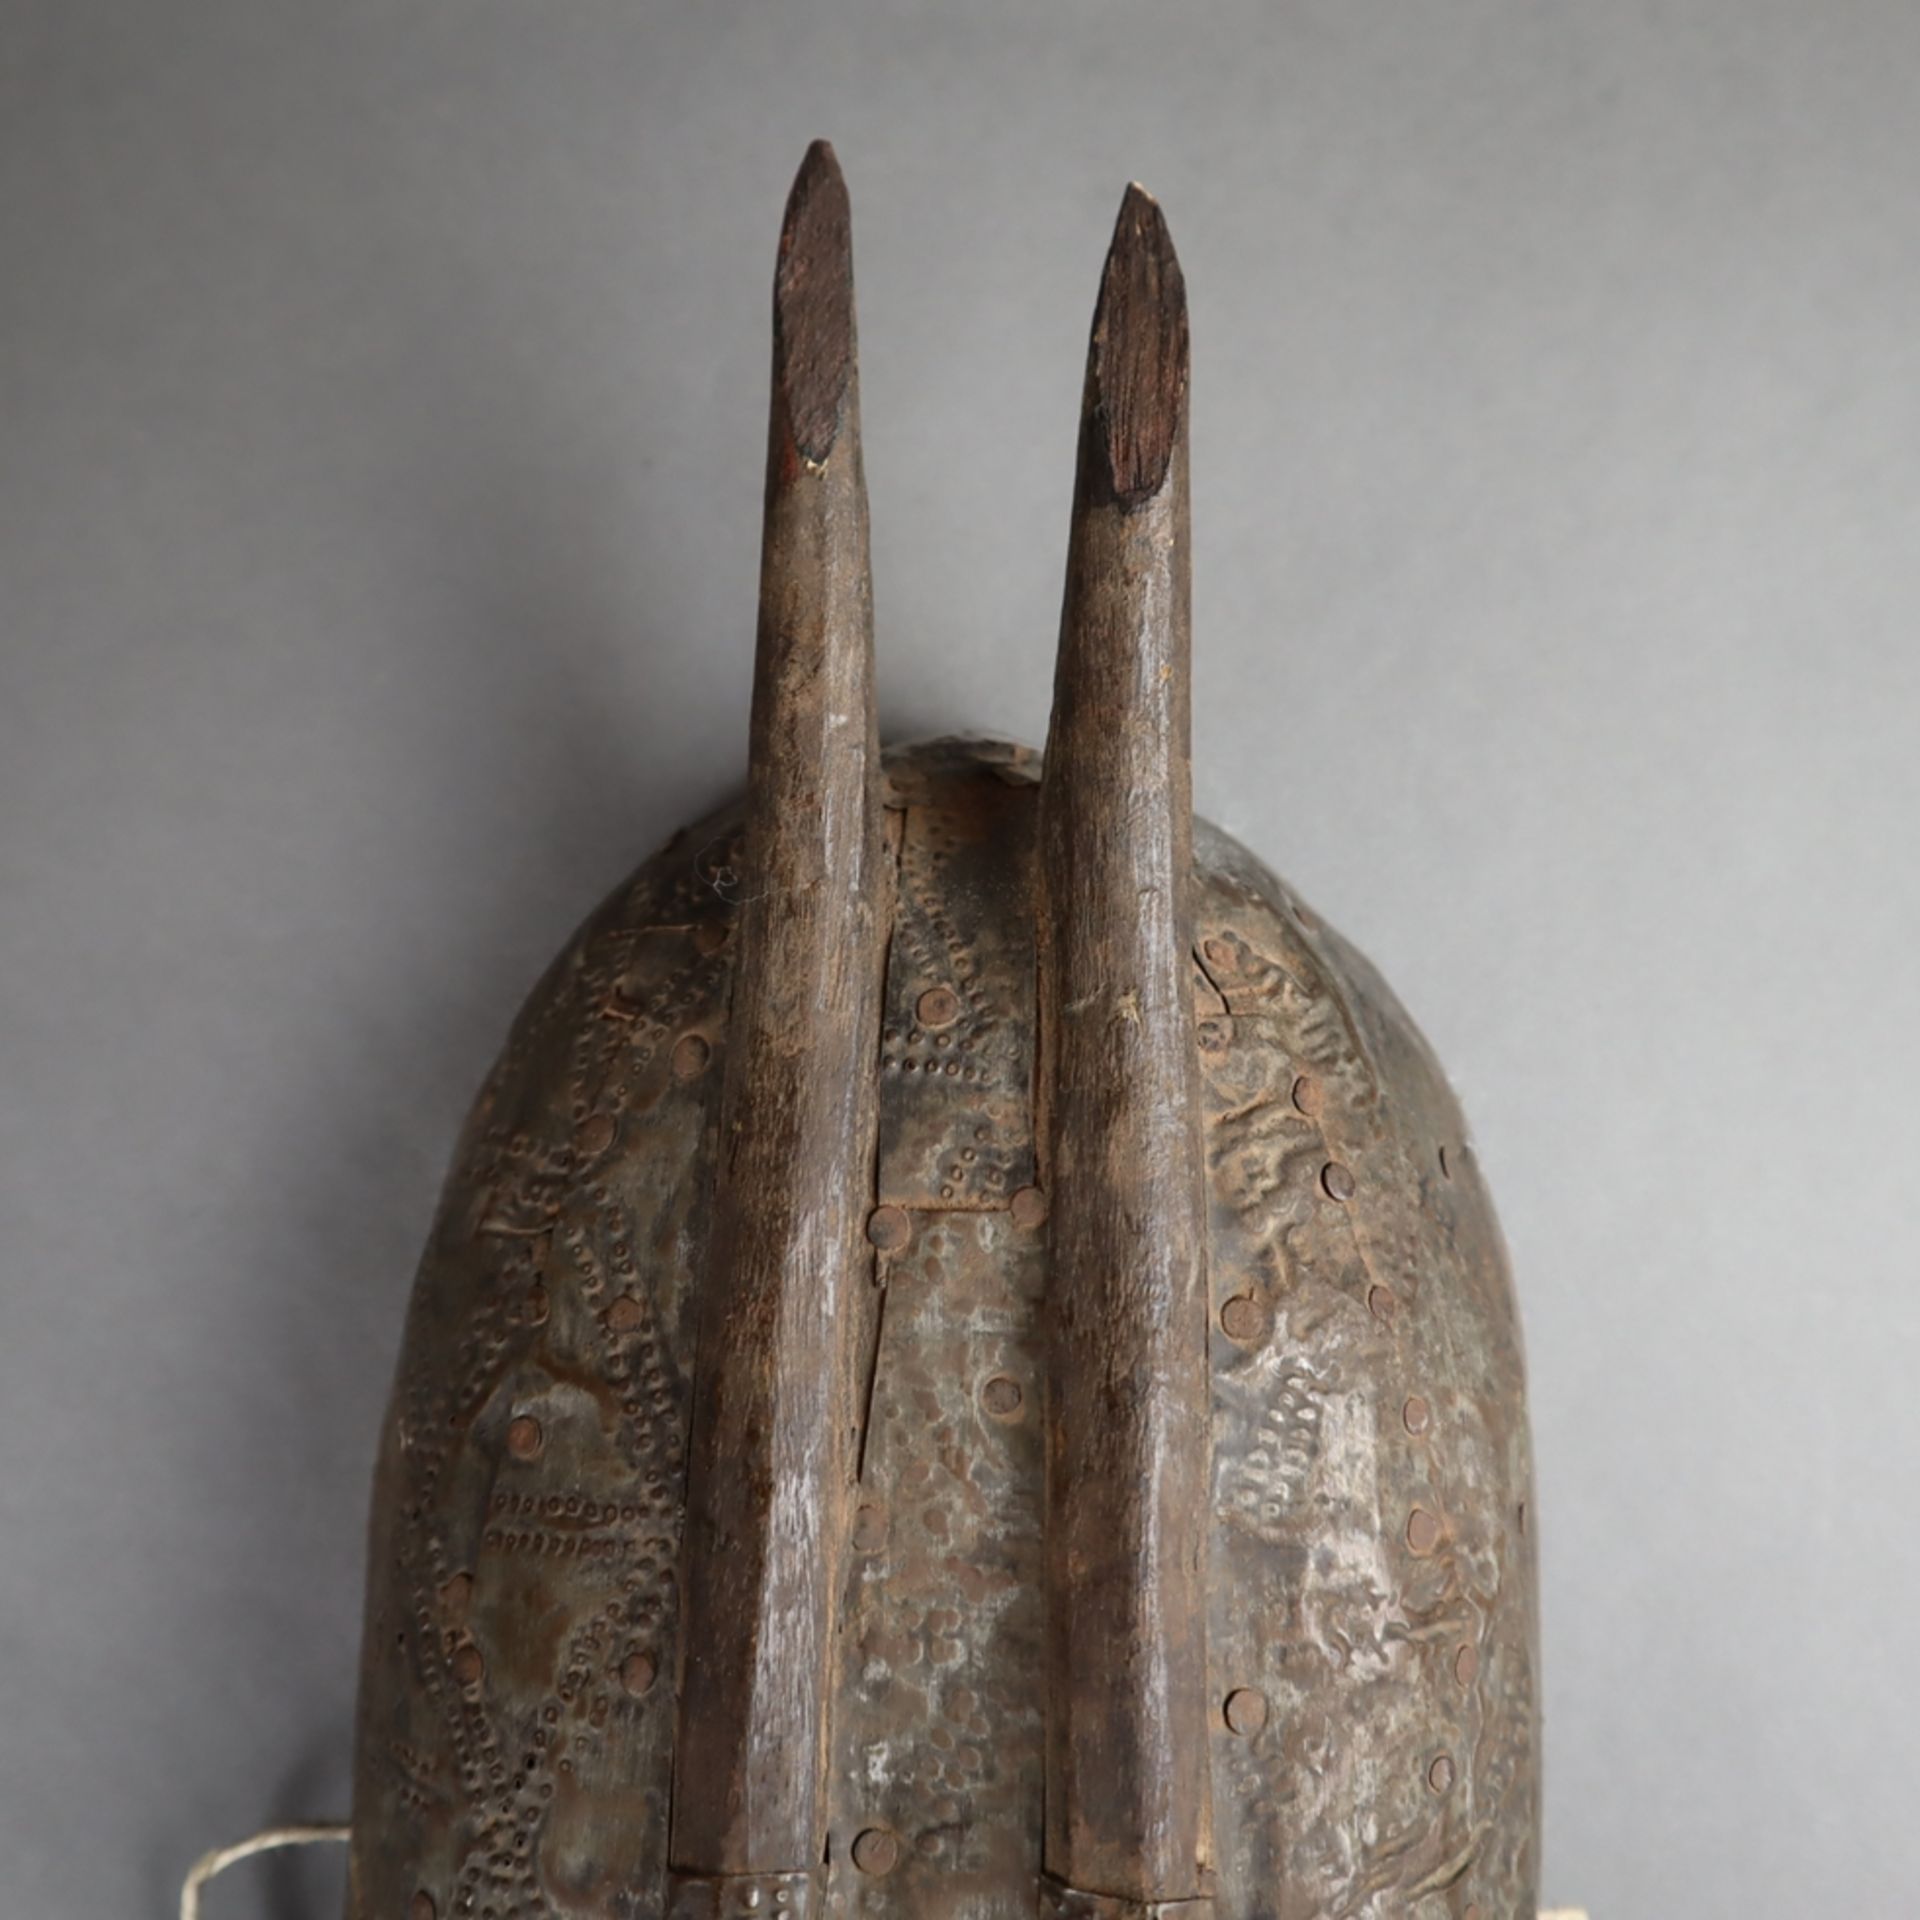 Metallbeschlagene Maske - Bambara/Marka, Mali, Holz/Metallbeschlag/Wolle, schma - Bild 5 aus 6